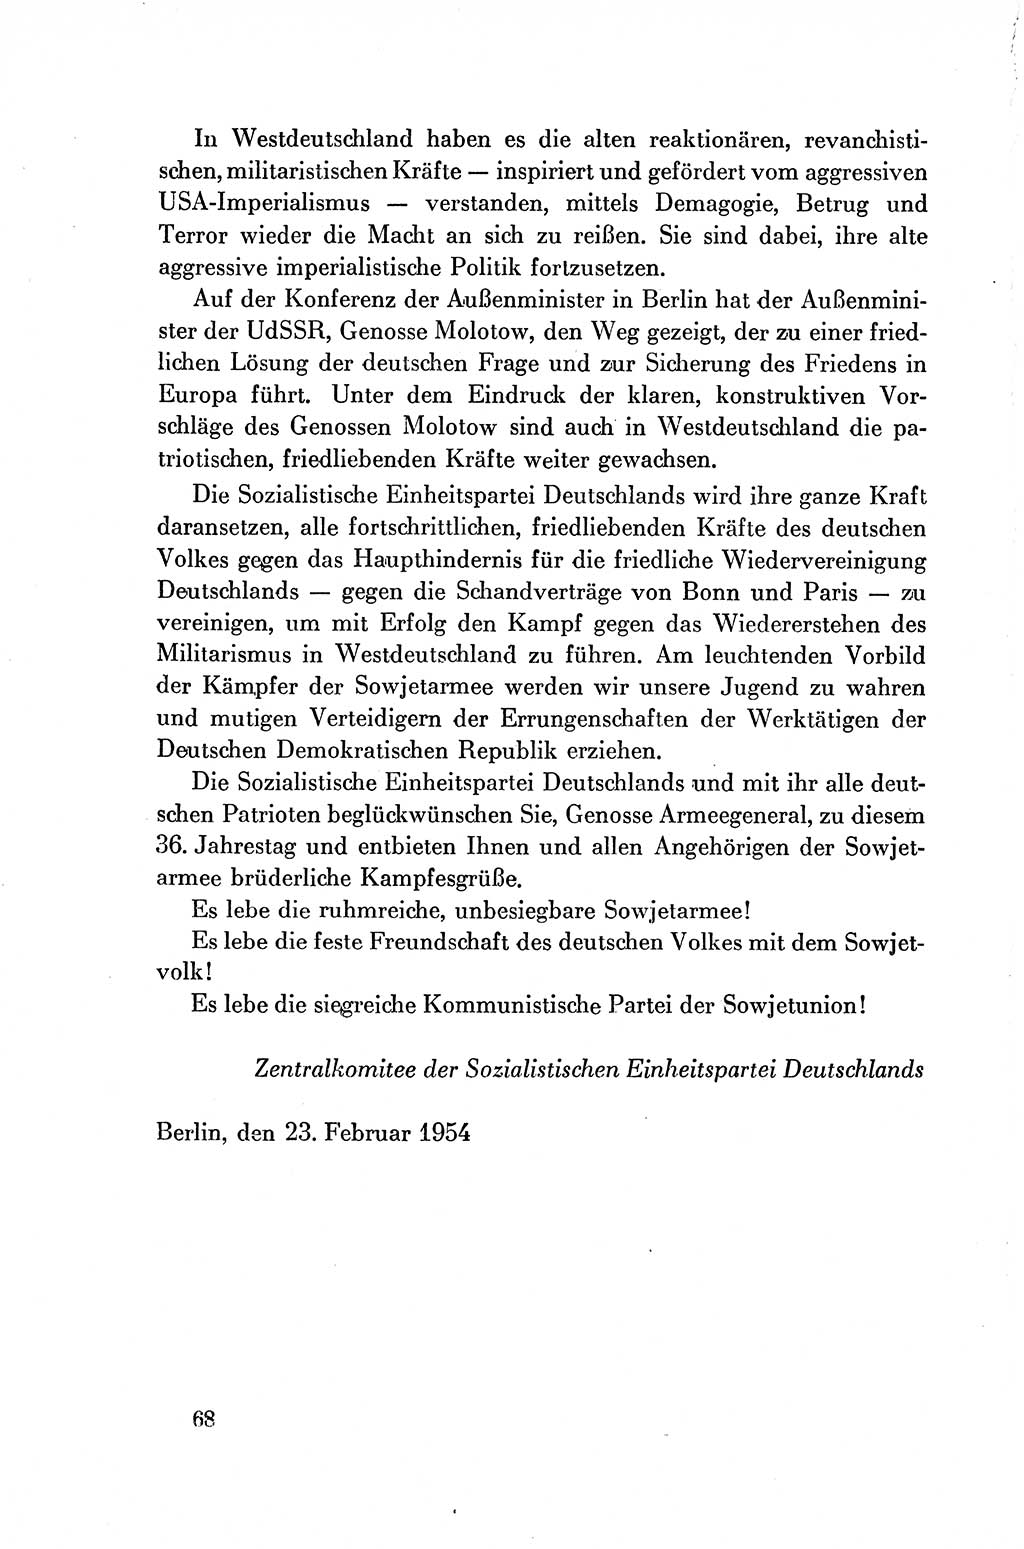 Dokumente der Sozialistischen Einheitspartei Deutschlands (SED) [Deutsche Demokratische Republik (DDR)] 1954-1955, Seite 68 (Dok. SED DDR 1954-1955, S. 68)